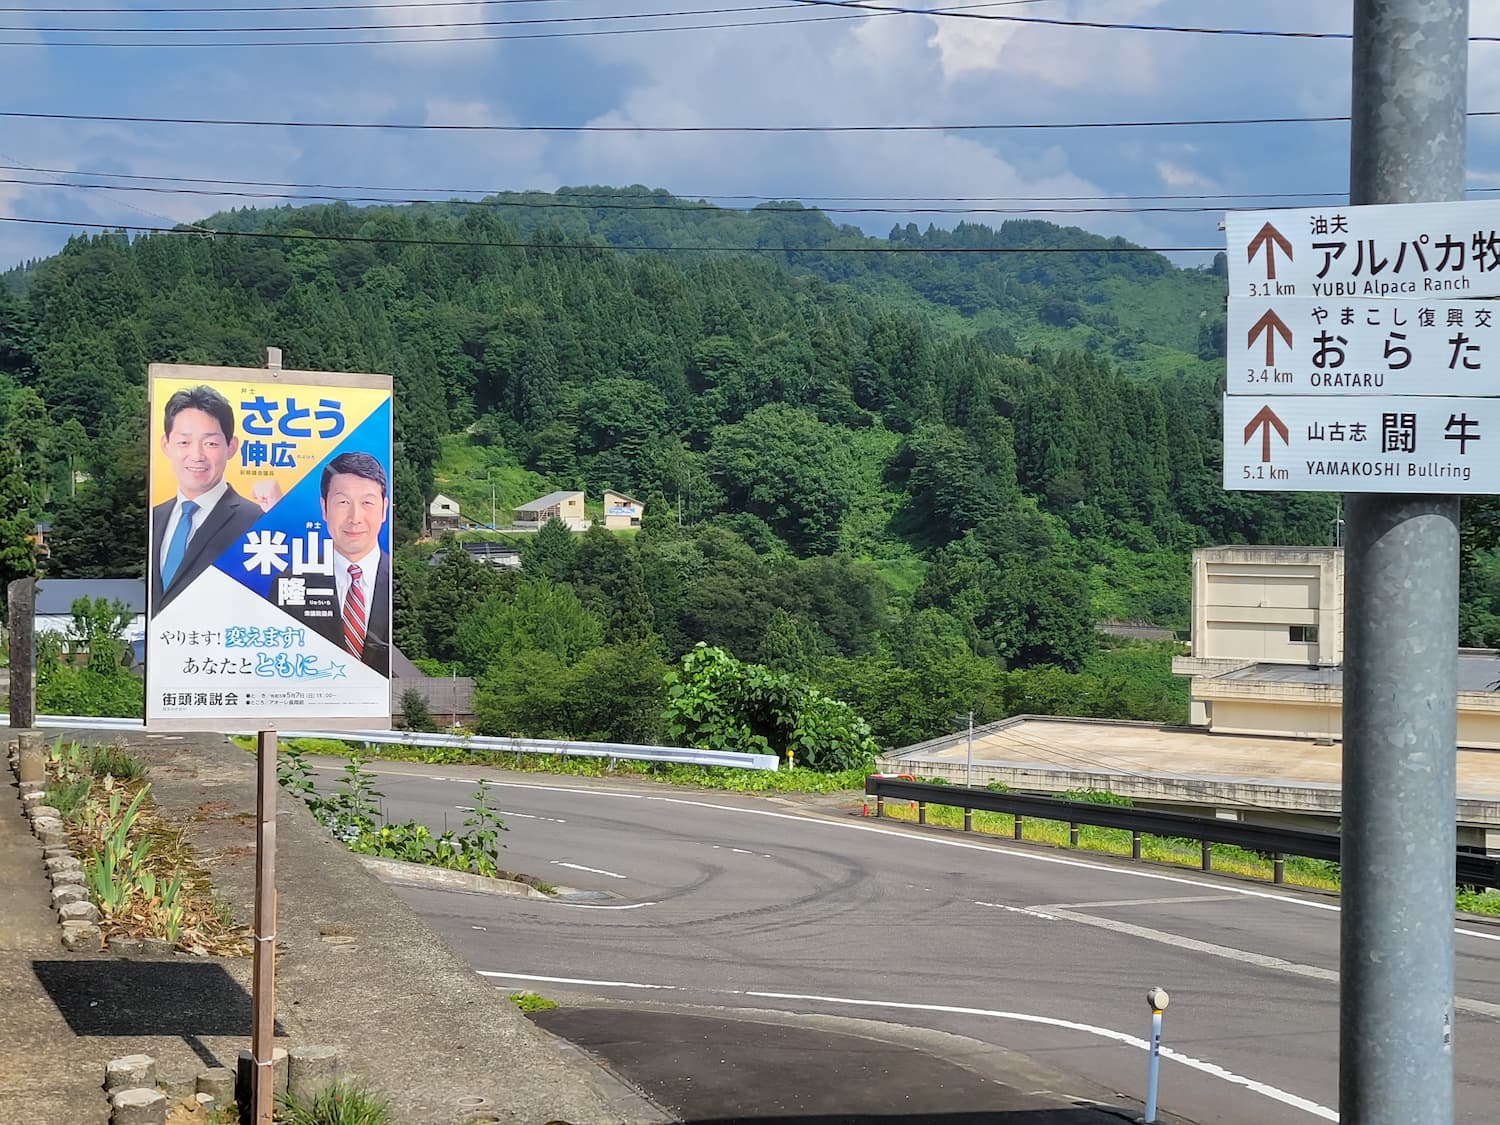 ポスターと新潟の風景。